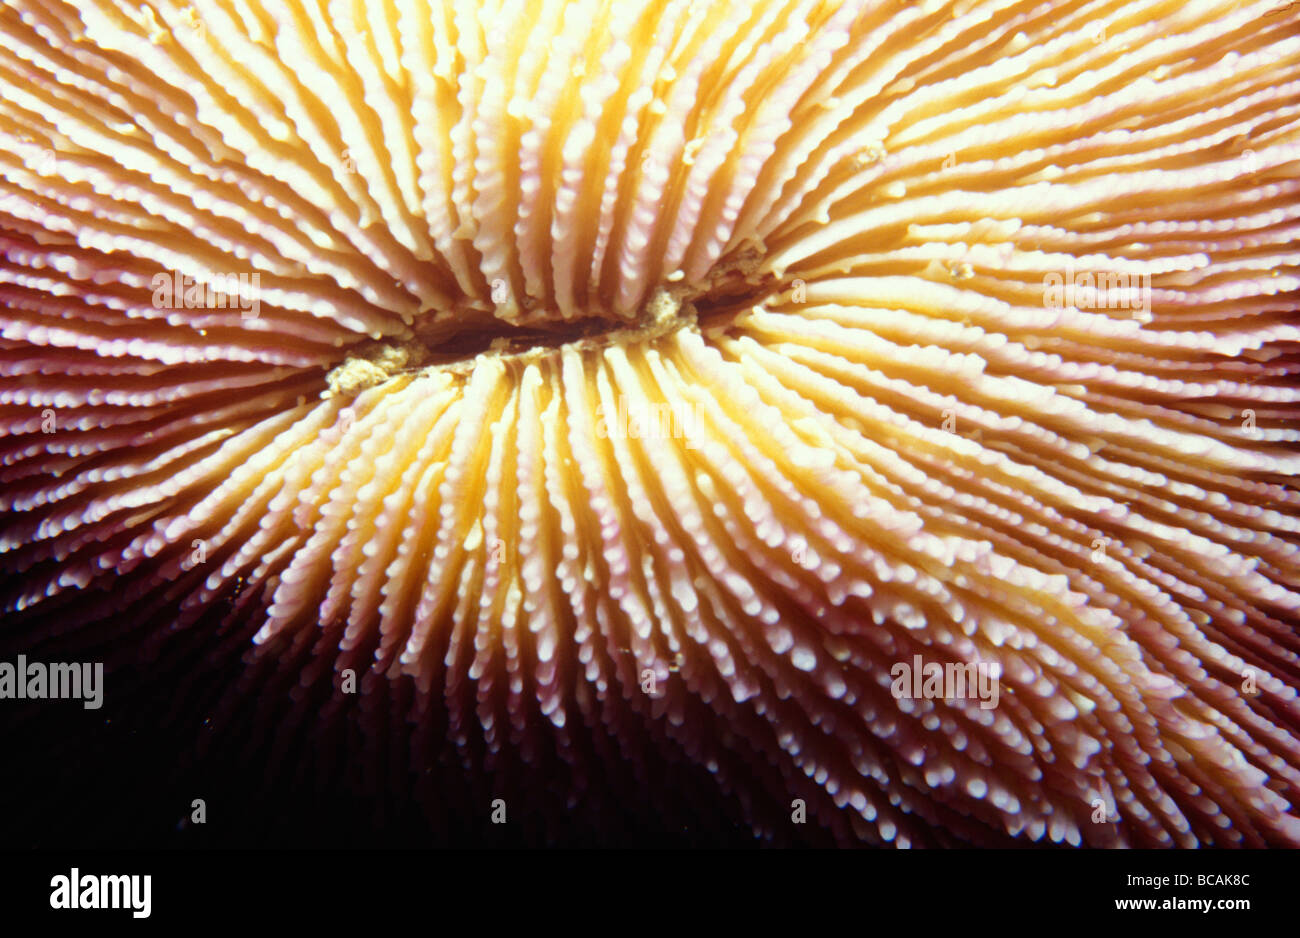 La surface striée et cannelée en profondeur du disque Mushroom Coral. Banque D'Images